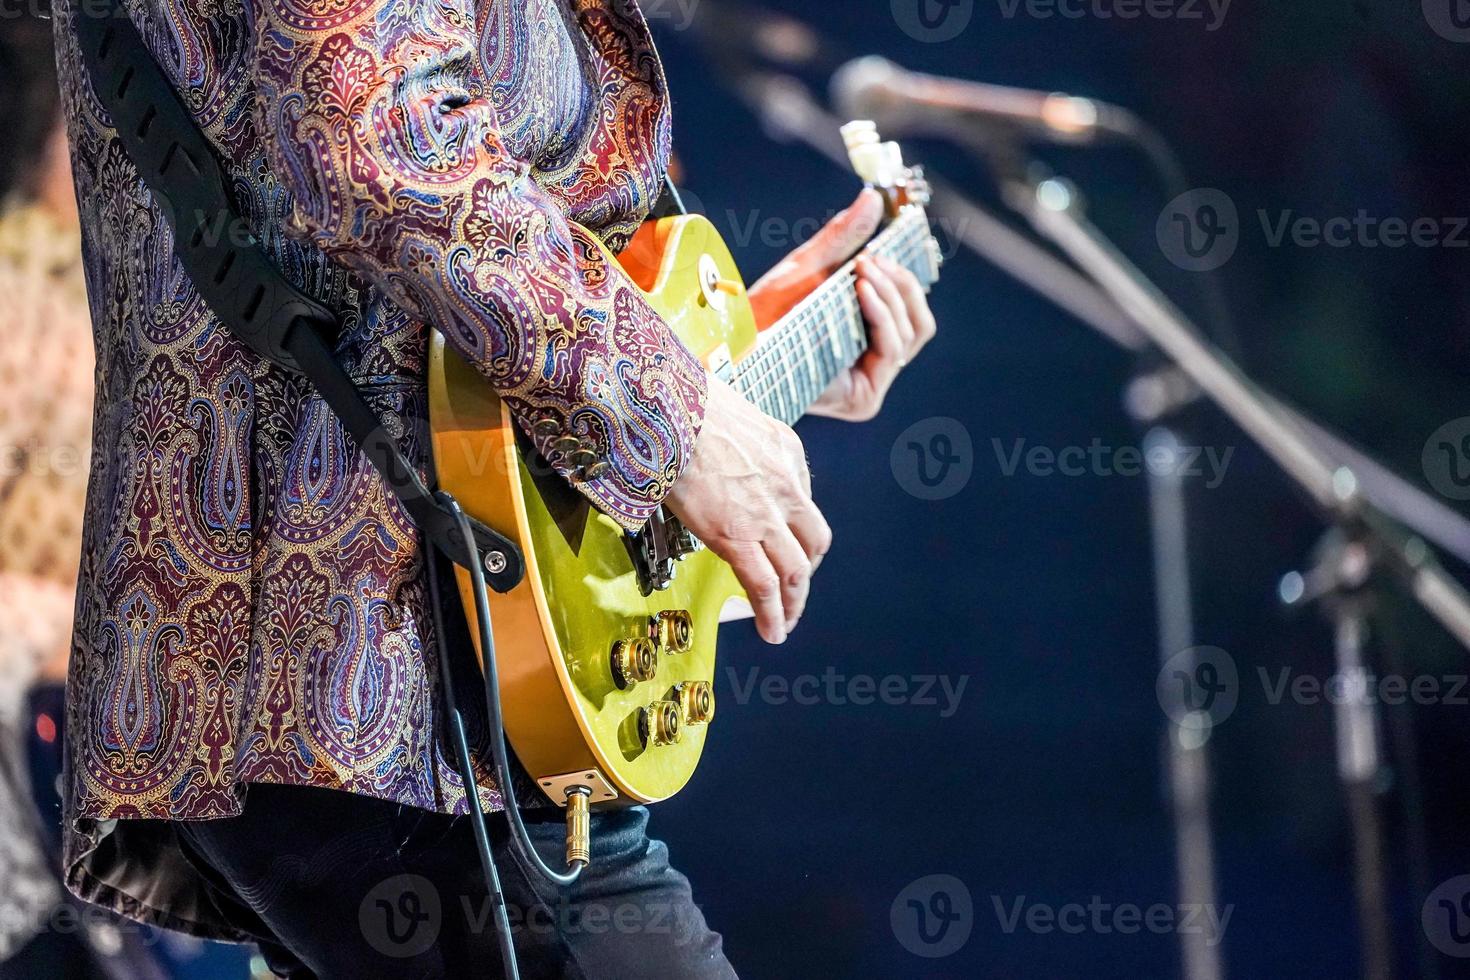 guitarra estilo dedo, do artista especialista em experiência com terno colorido. foto